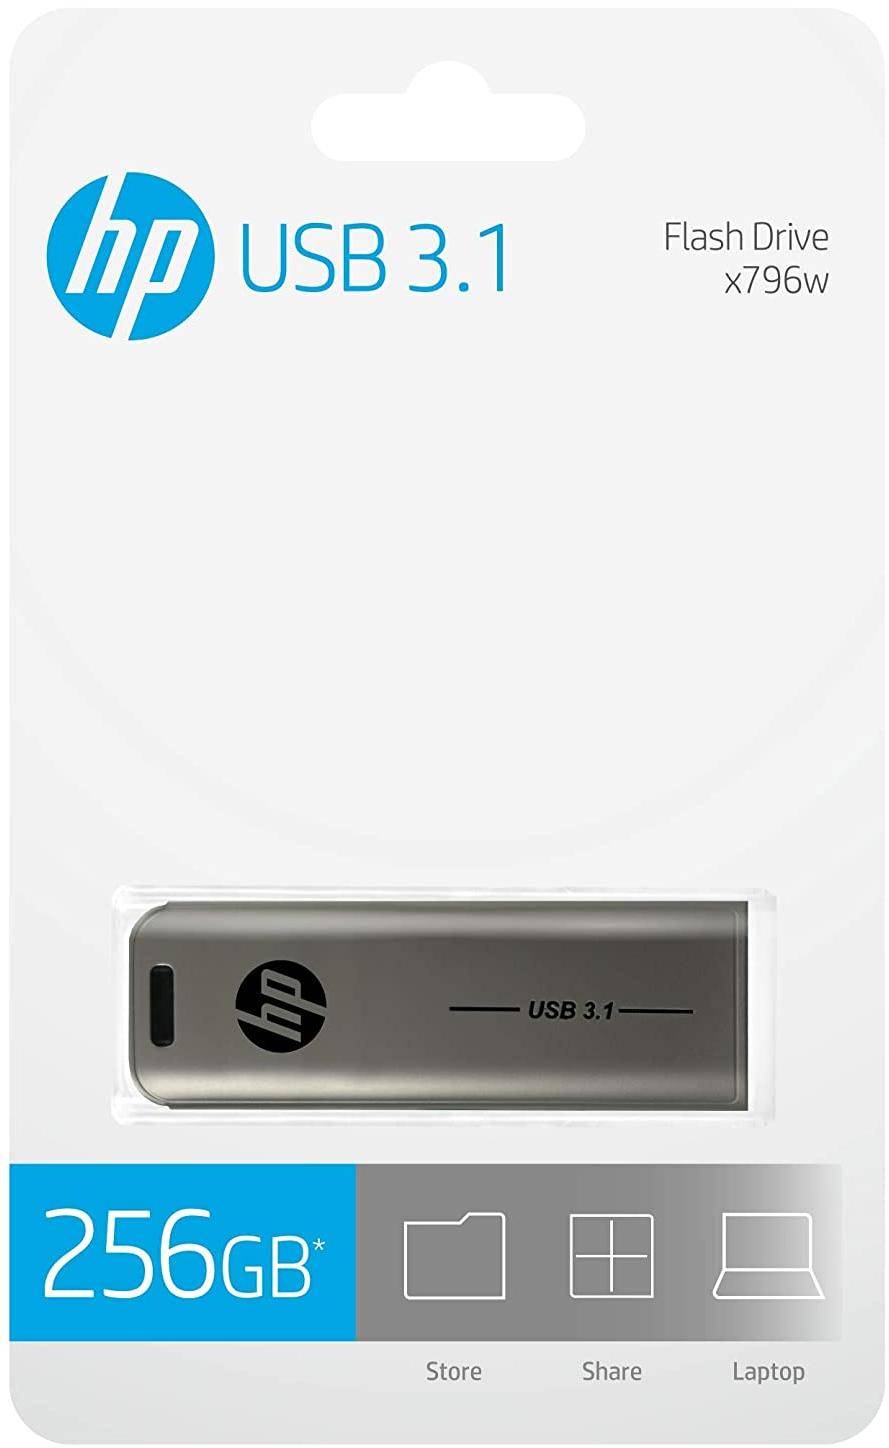 HP USB 3.1 Flash Drive 256GB - Silver